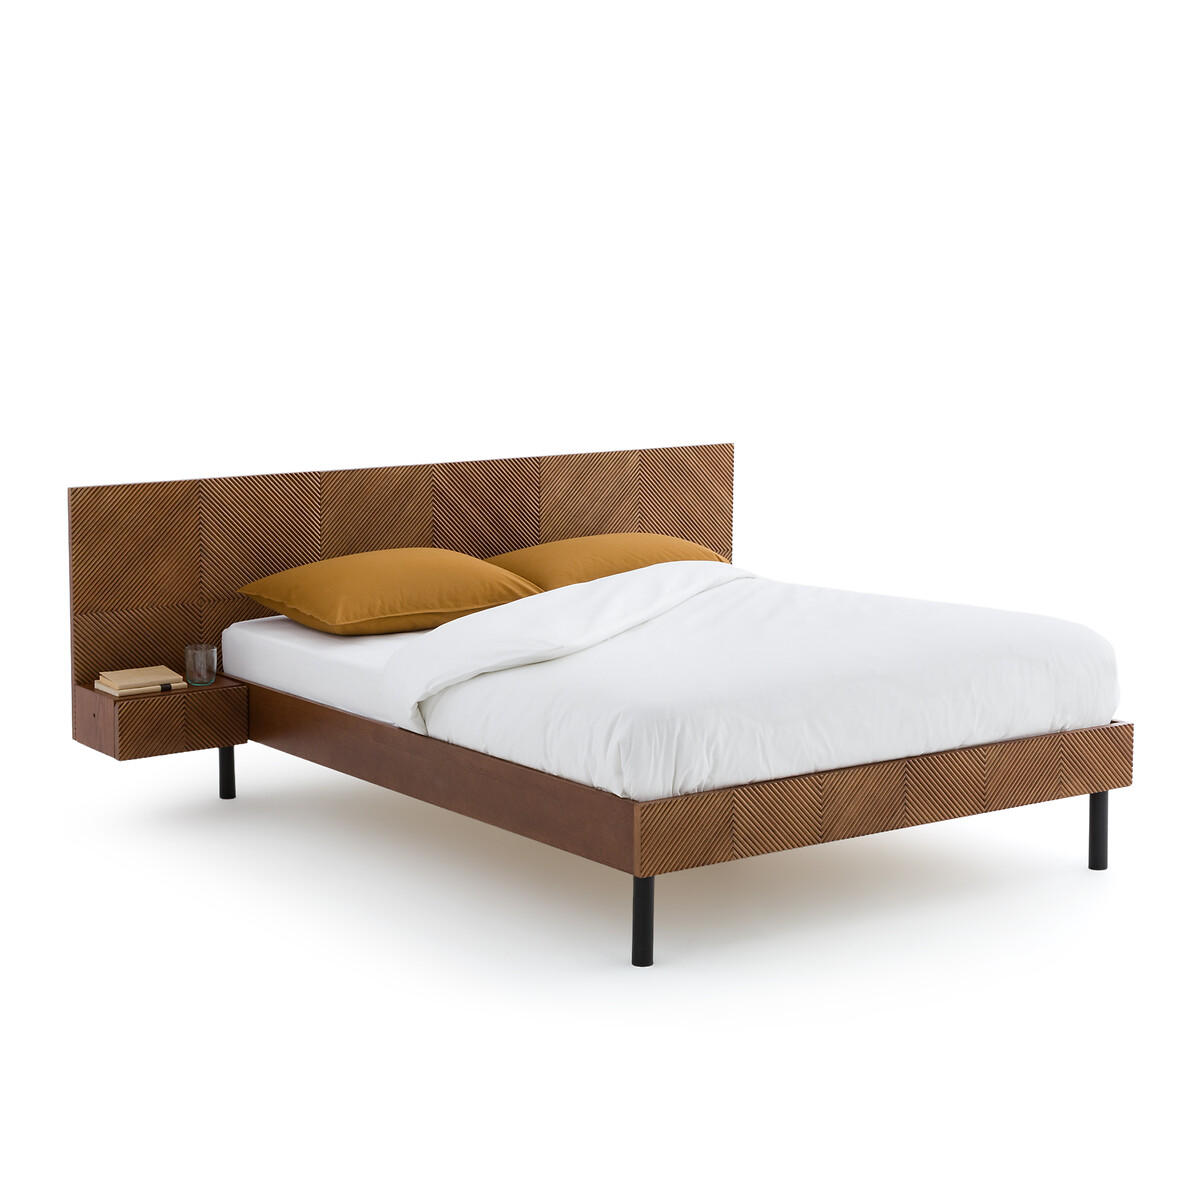 Кровать Со встроенными изголовьями и кроватным основанием Jrem 160 x 200 см каштановый LaRedoute, размер 160 x 200 см - фото 1